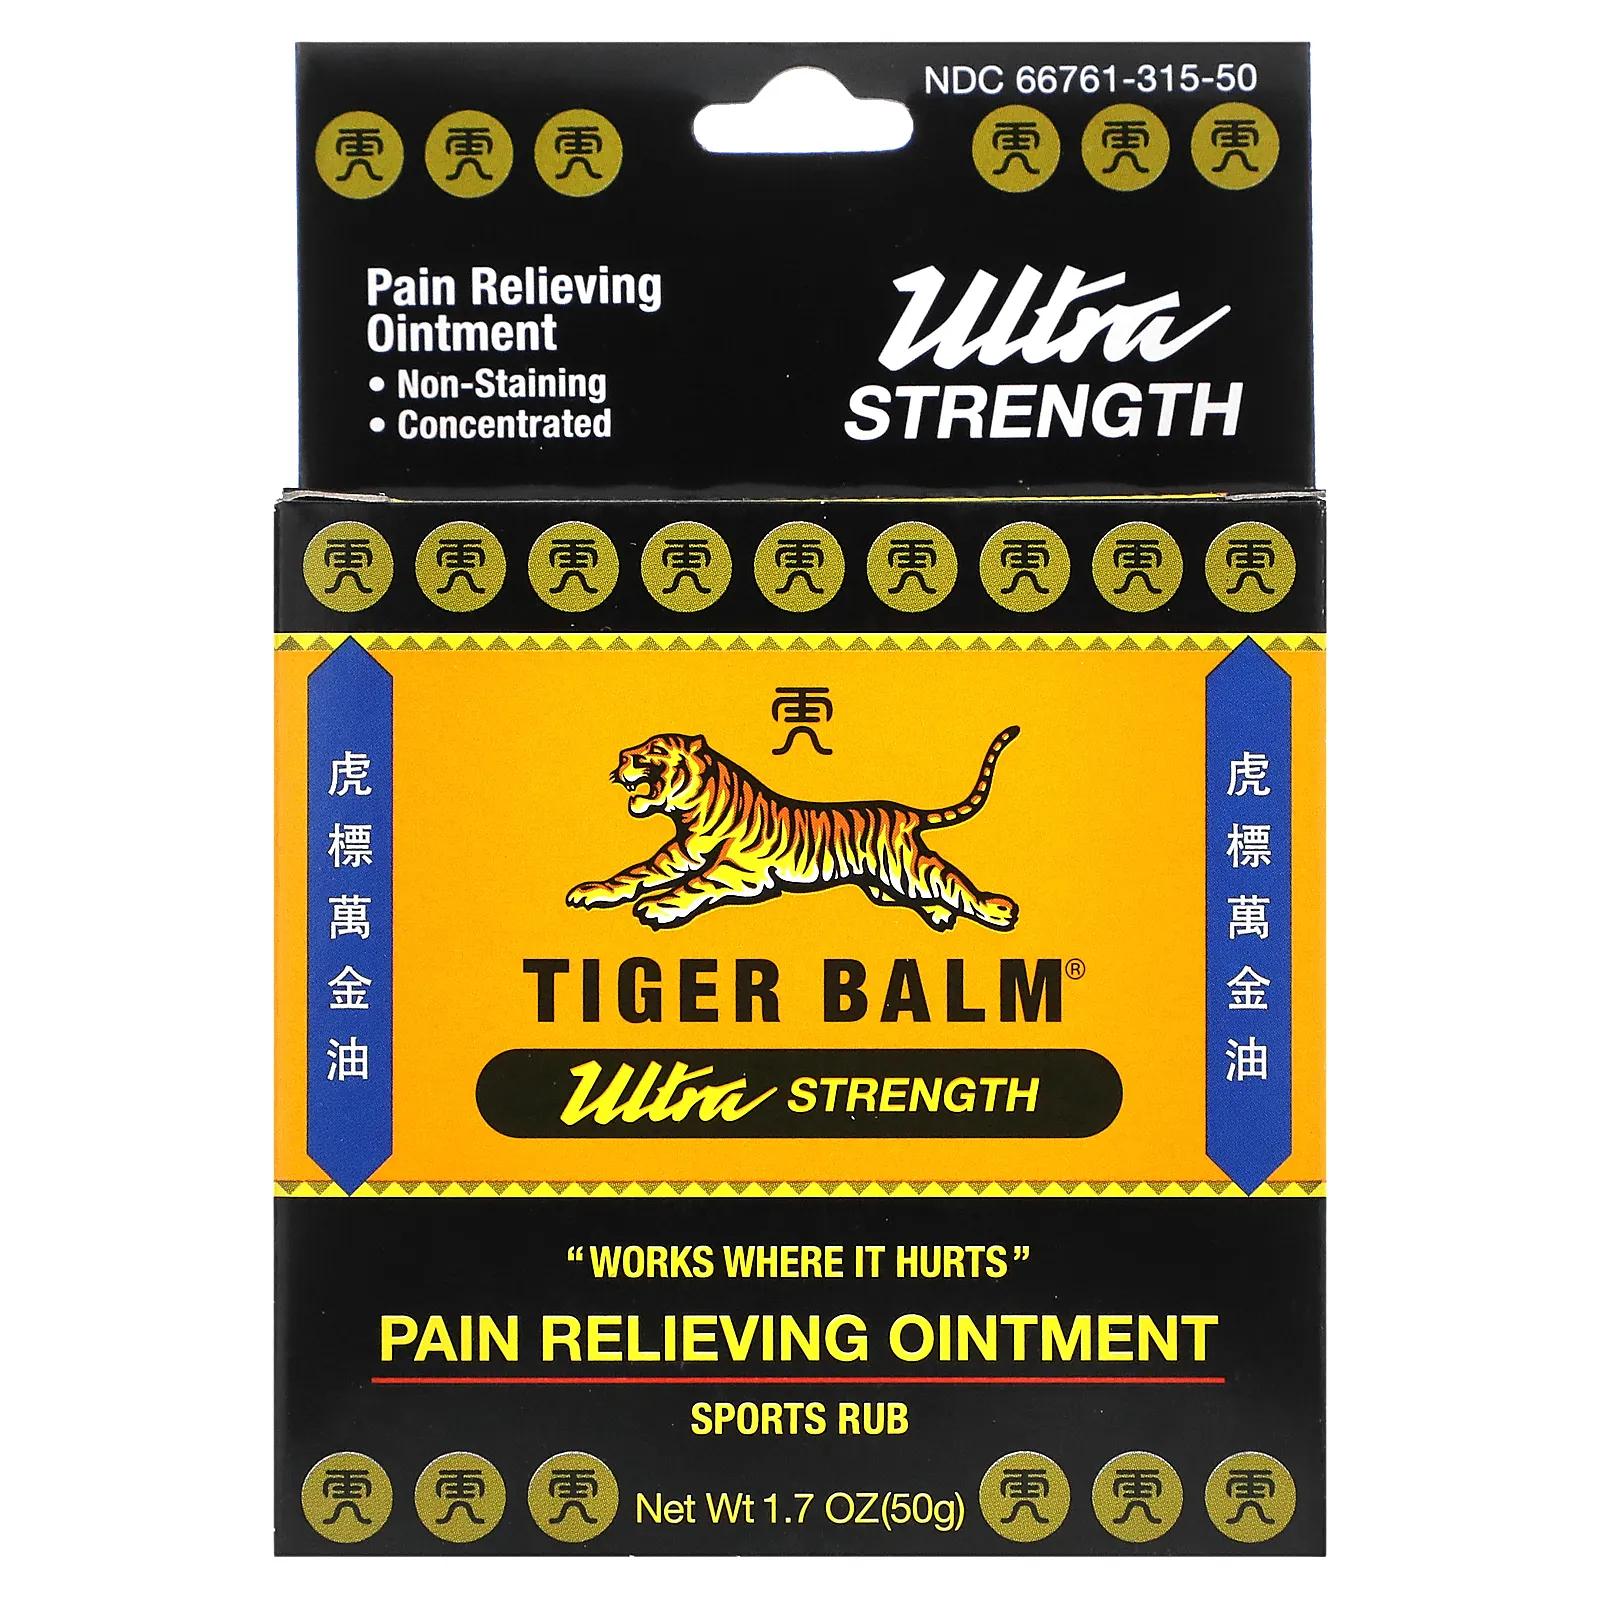 Tiger Balm Мазь для снятия боли ультра-сила 1,7 унции (50 г) tiger balm мазь для снятия боли ультра сила 1 7 унции 50 г